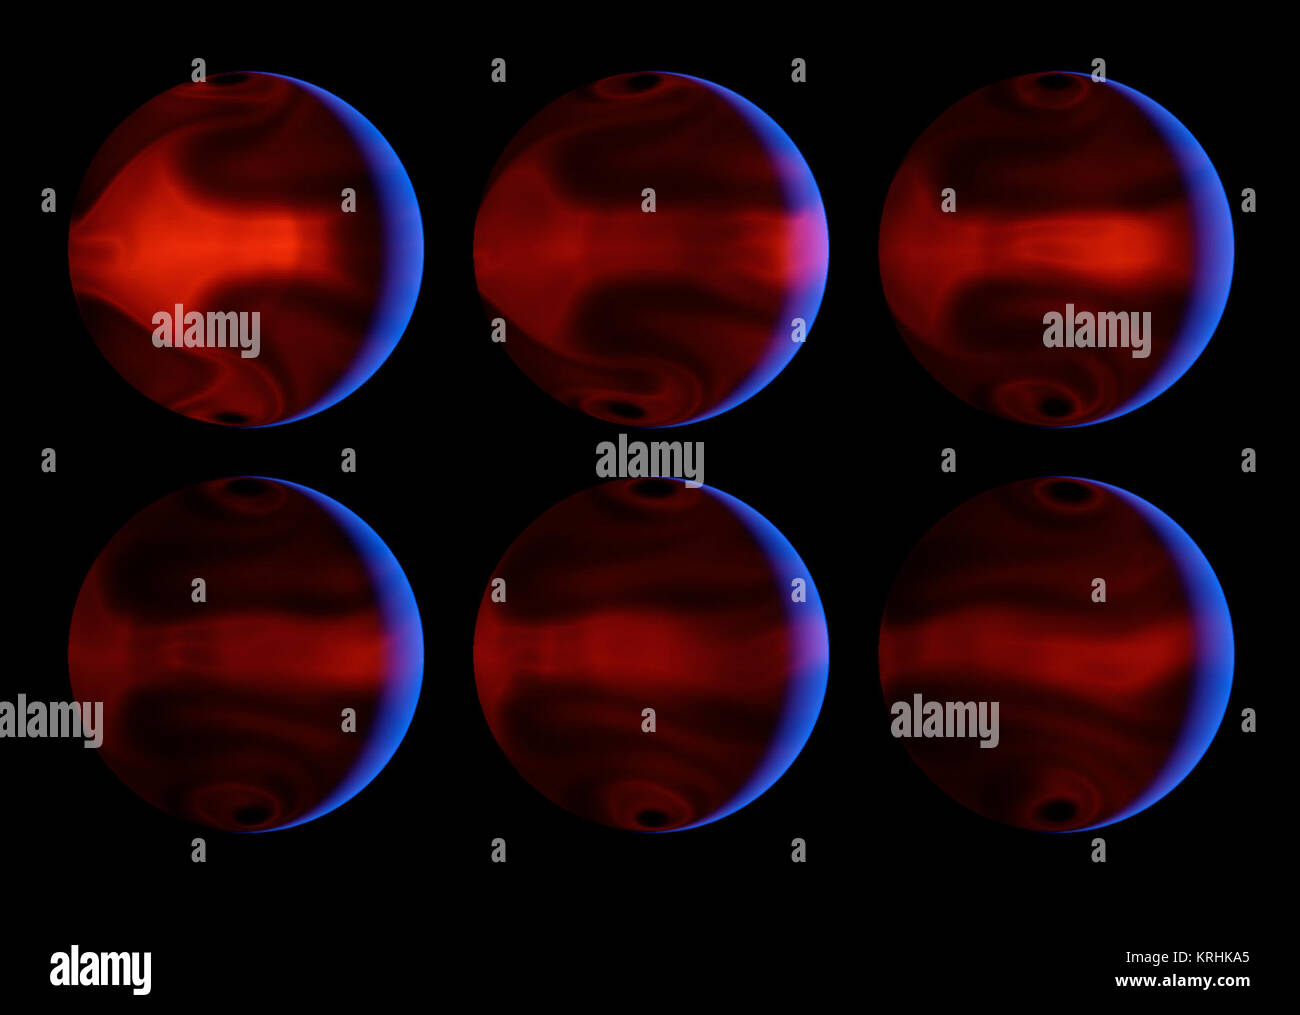 Ces images de synthèse graphique le développement de modèles météorologiques sévères sur l'exoplanète très excentrique HD 80606b pendant les jours après son passage au plus près de son étoile parente. Une exoplanète est une planète qui orbite autour d'une étoile autre que notre soleil. Les images ont été produites par des simulations sur ordinateur qui modélisait au télescope spatial Spitzer de la NASA de mesures du rayonnement thermique de la planète. Les six cadres sont régulièrement espacées dans le temps, à partir de 4,4 jours après l'approche étroite à l'étoile, un moment connu comme 'périastre,' et en 8,9 jours après périastre. La lueur bleue Banque D'Images